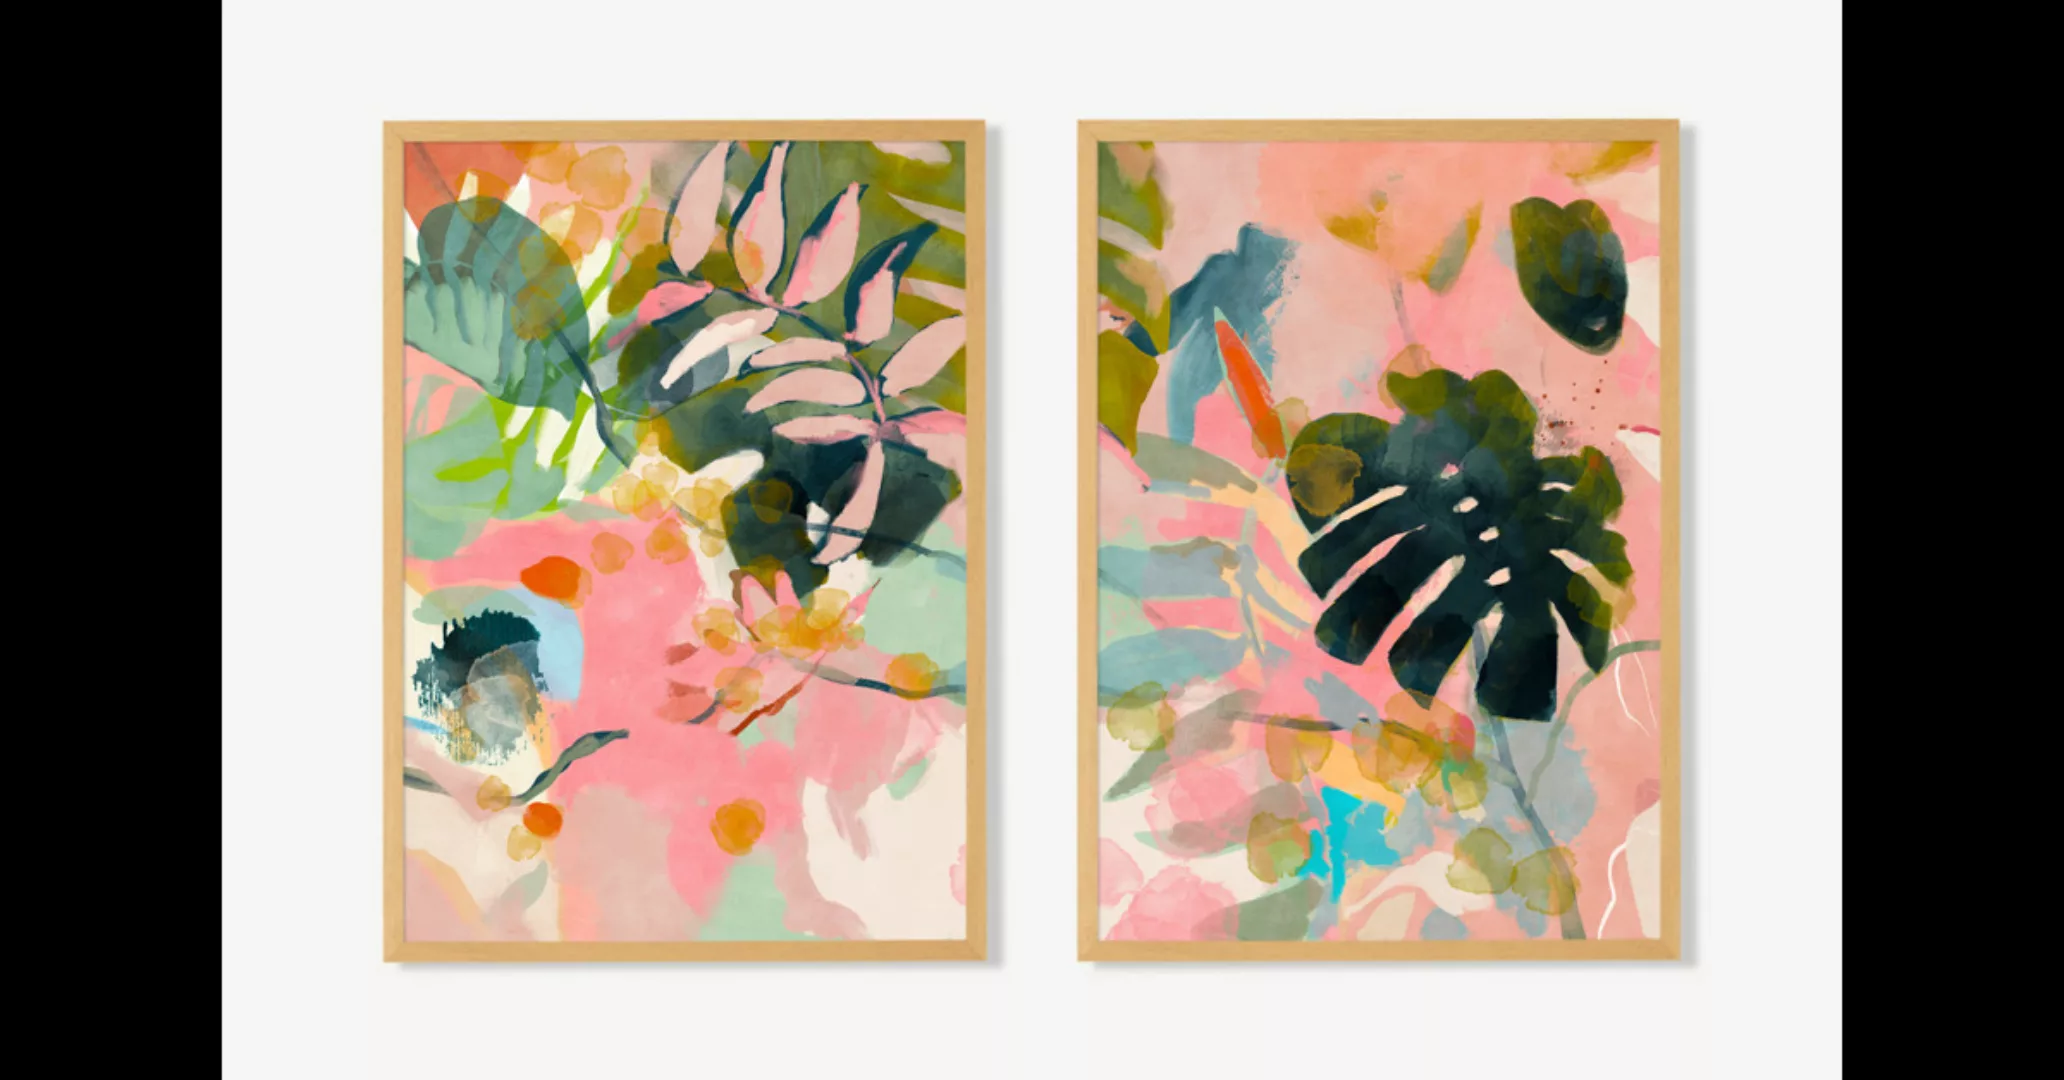 Tropical Summer, 2 x gerahmte Kunstdrucke von Ana Rut Bre (A2) - MADE.com günstig online kaufen